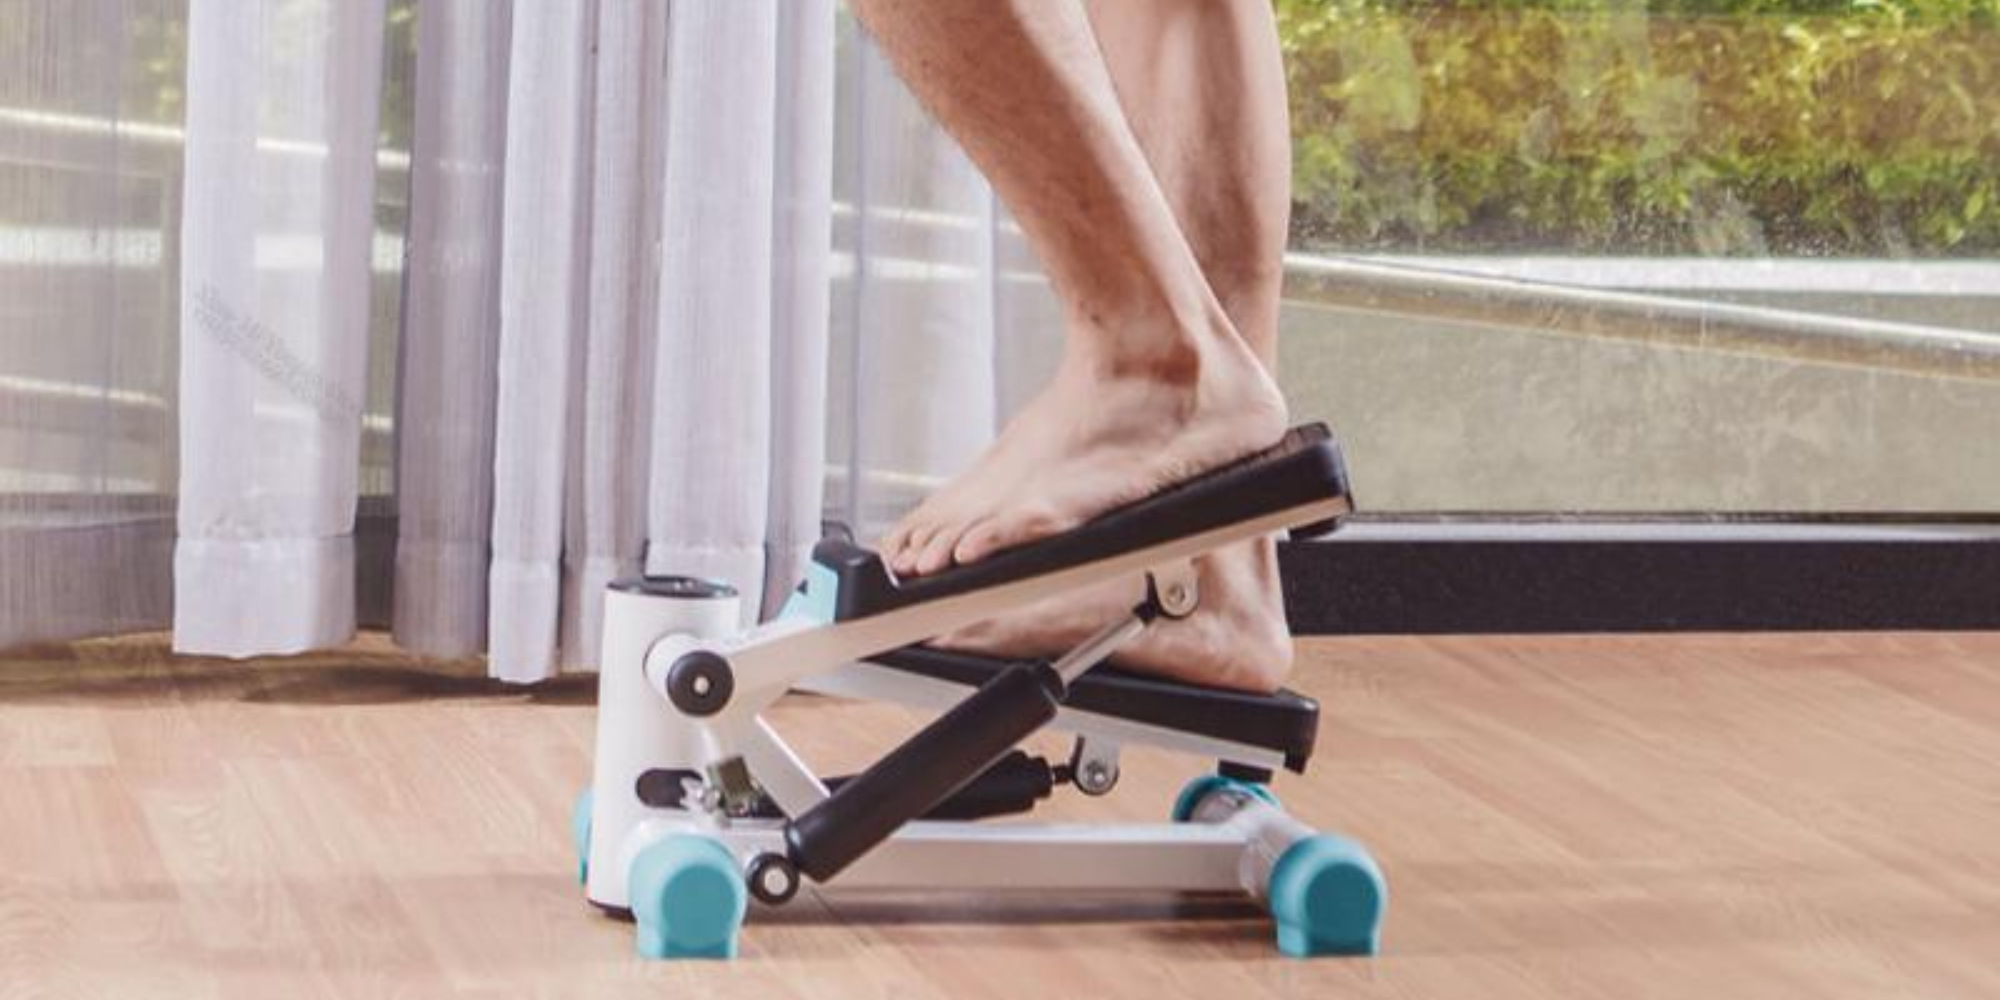 جهاز تمارين للقدم والركبة STEPPER LEG TRAINER – تريدميل صغير الحجم